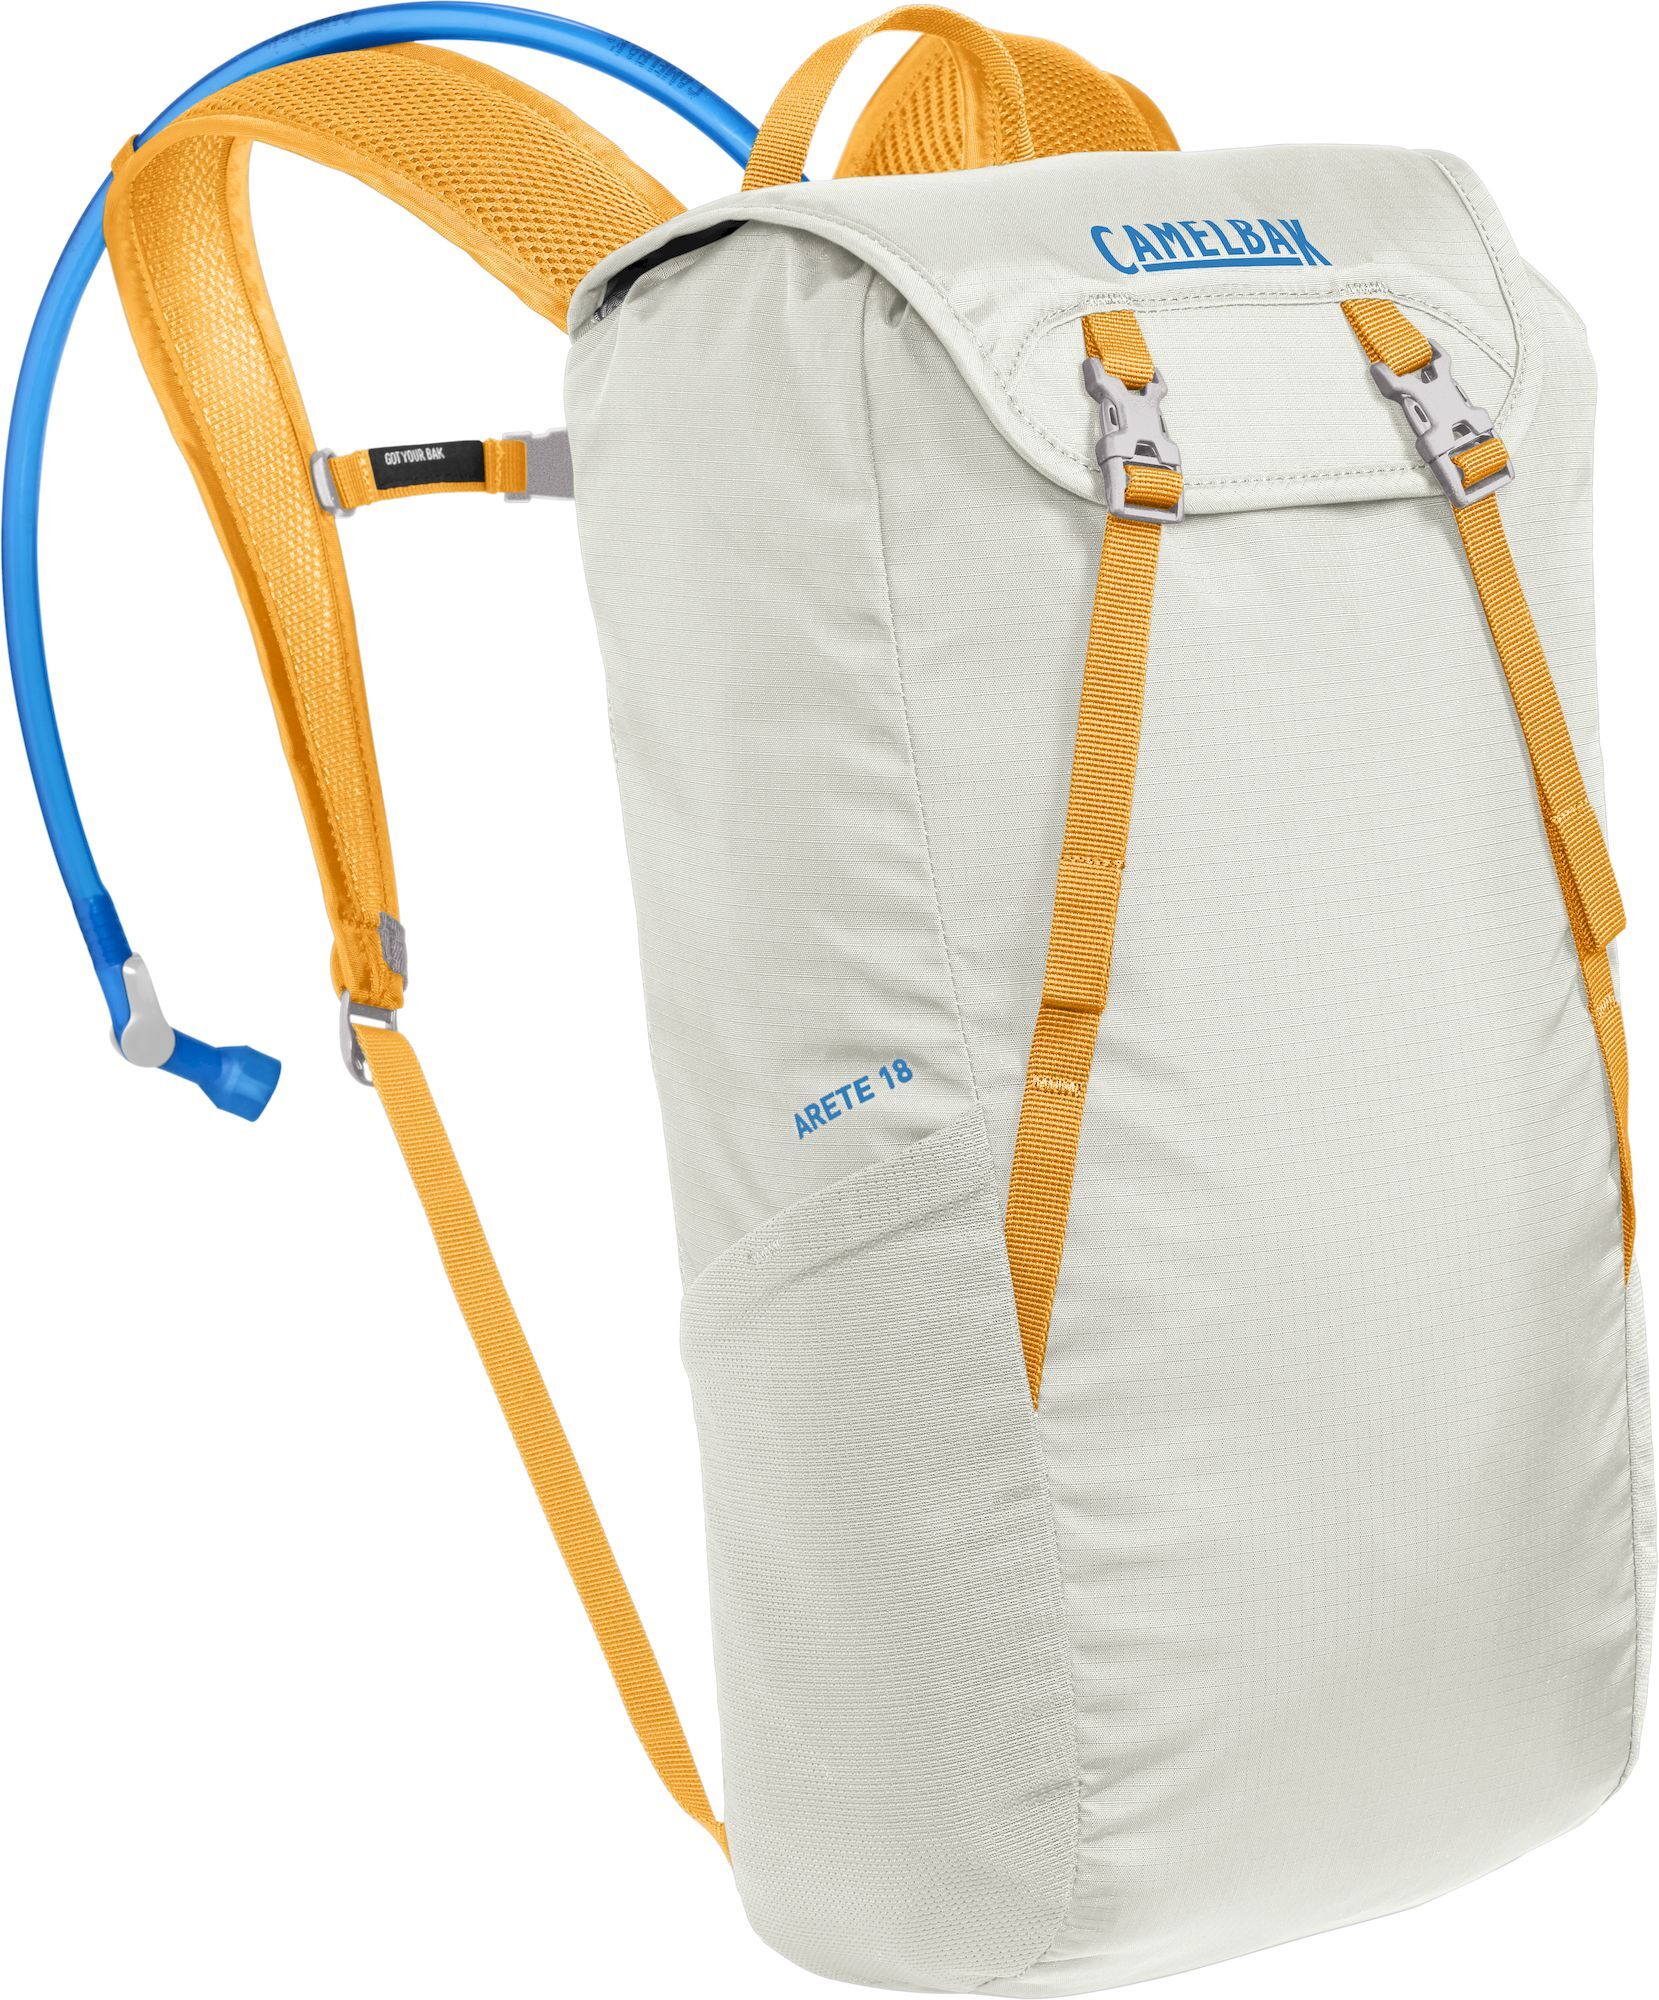 Camelbak Arete 18 - Walking backpack